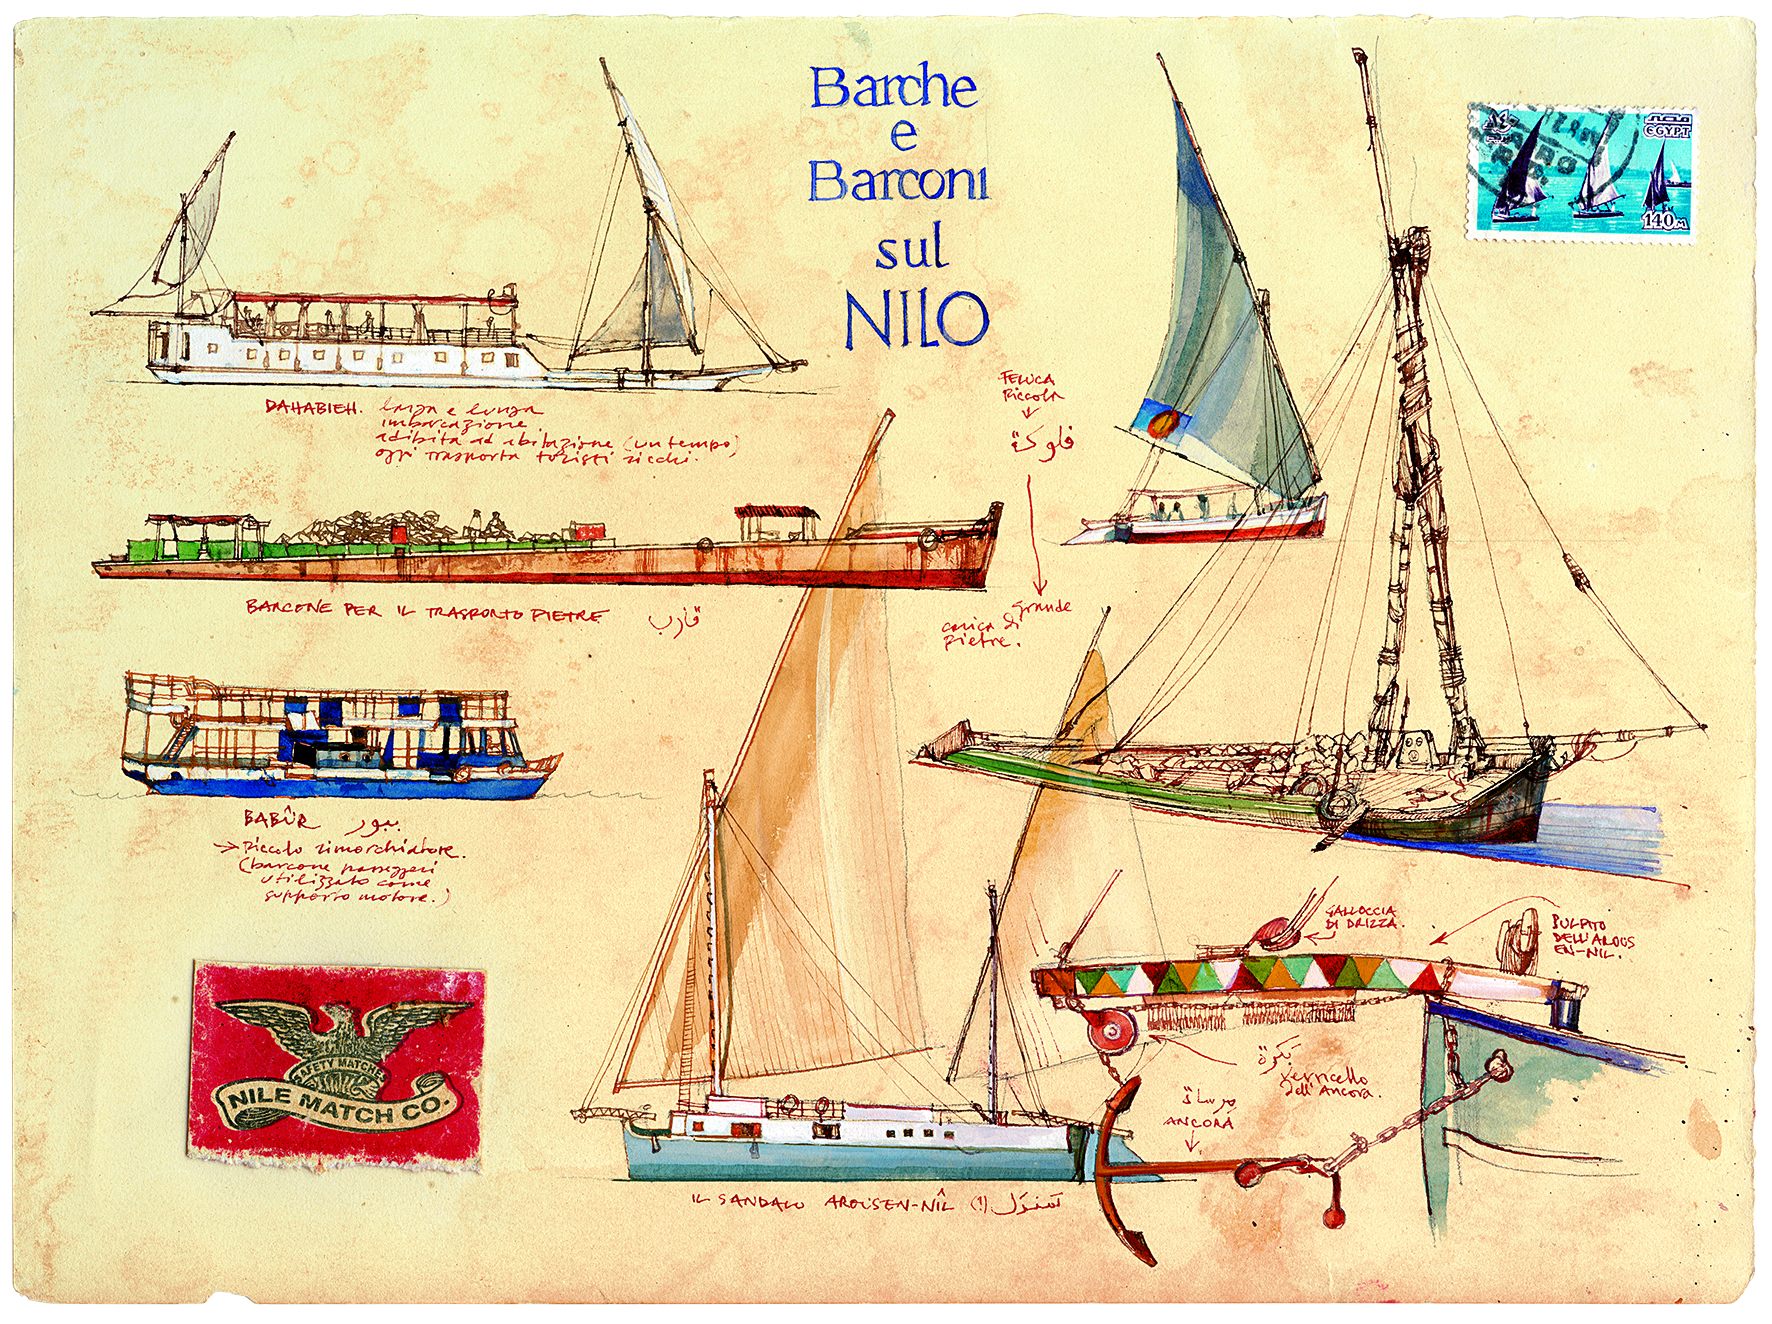 Barche e barconi sul Nilo, Egitto